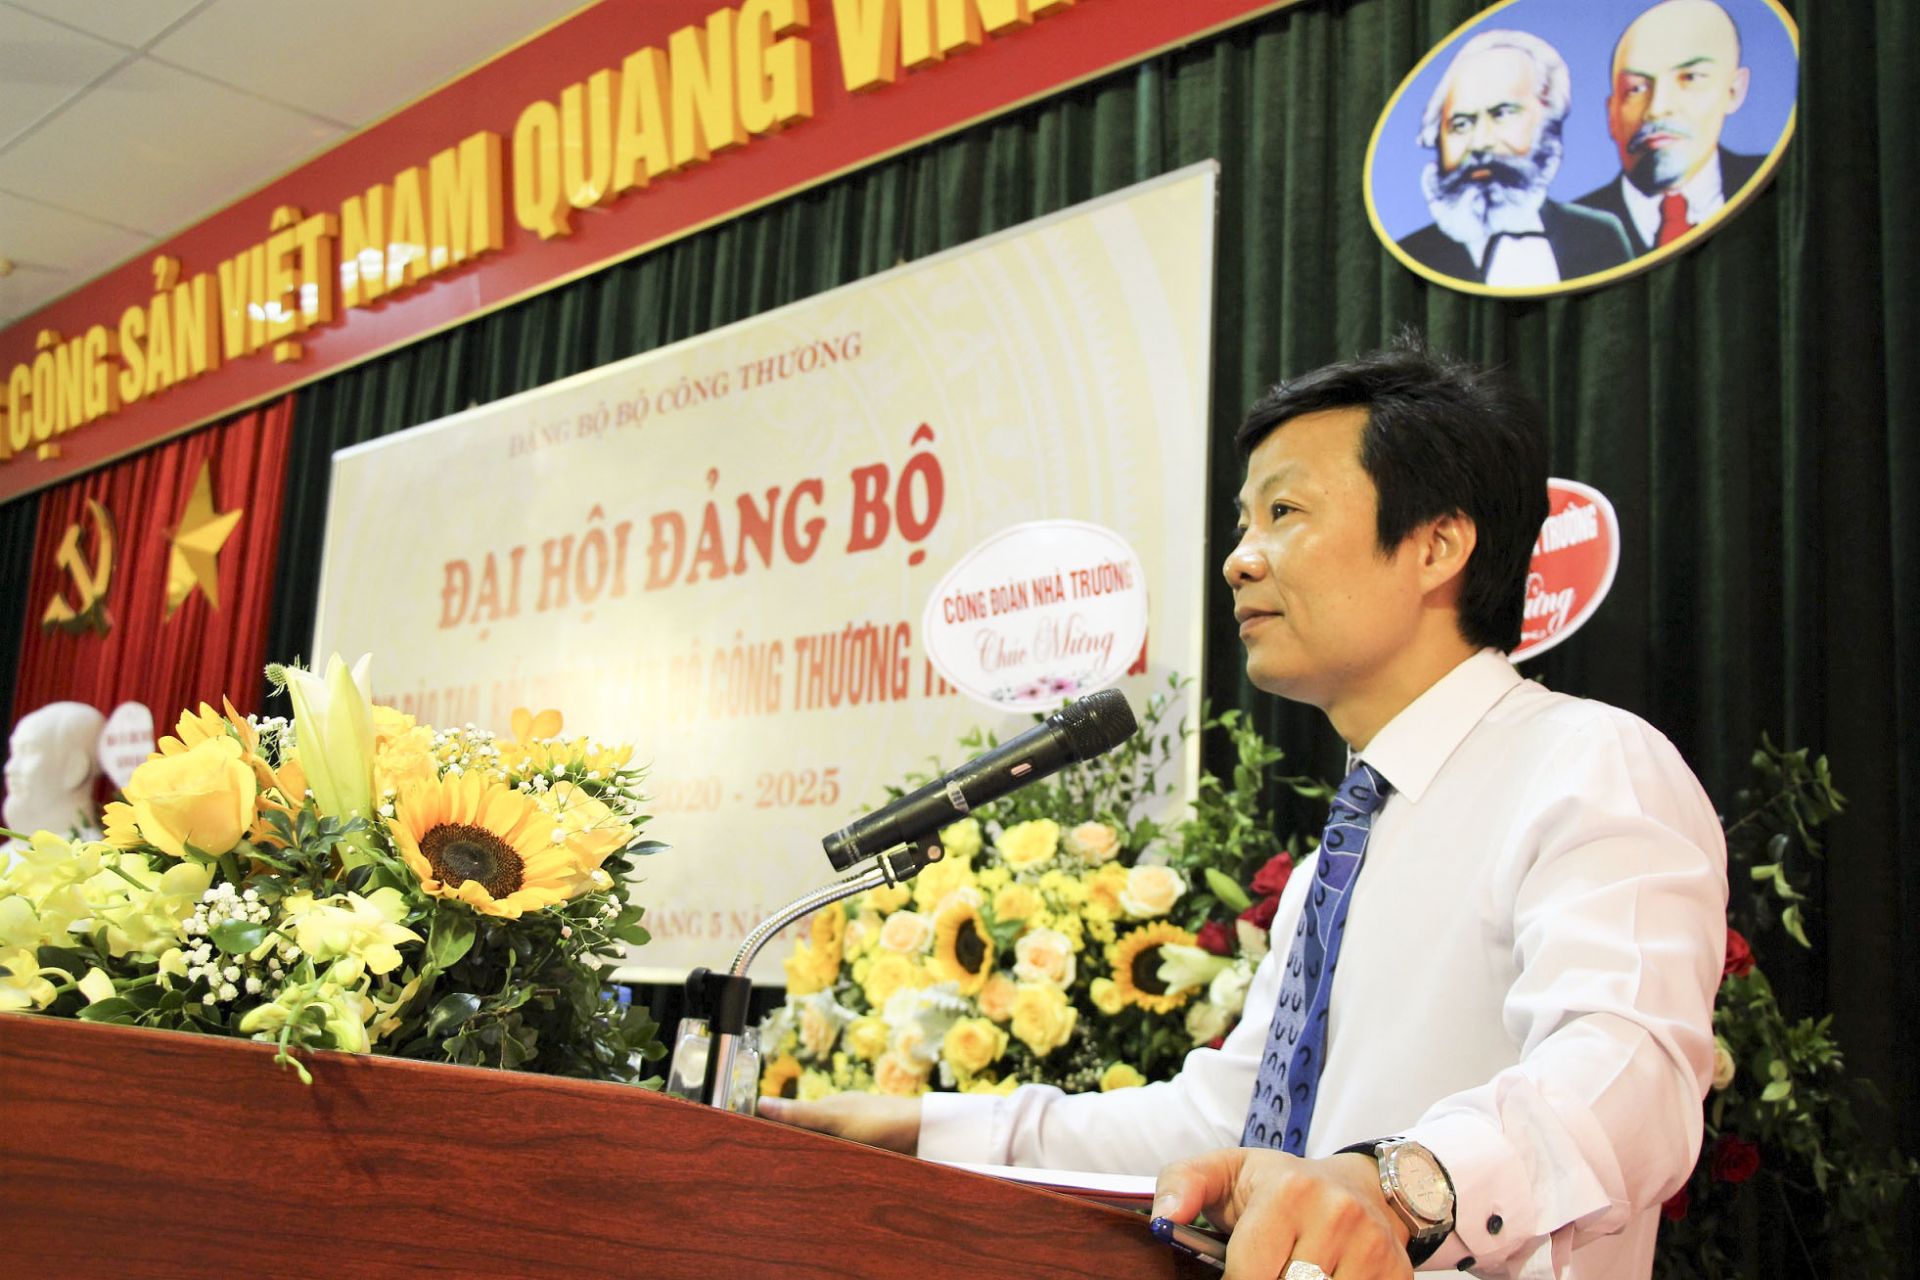 Đồng chí Nguyễn Thiện Nam - Bí thư Đảng bộ, Hiệu trưởng Nhà trường phát biểu khai mạc Đại hội